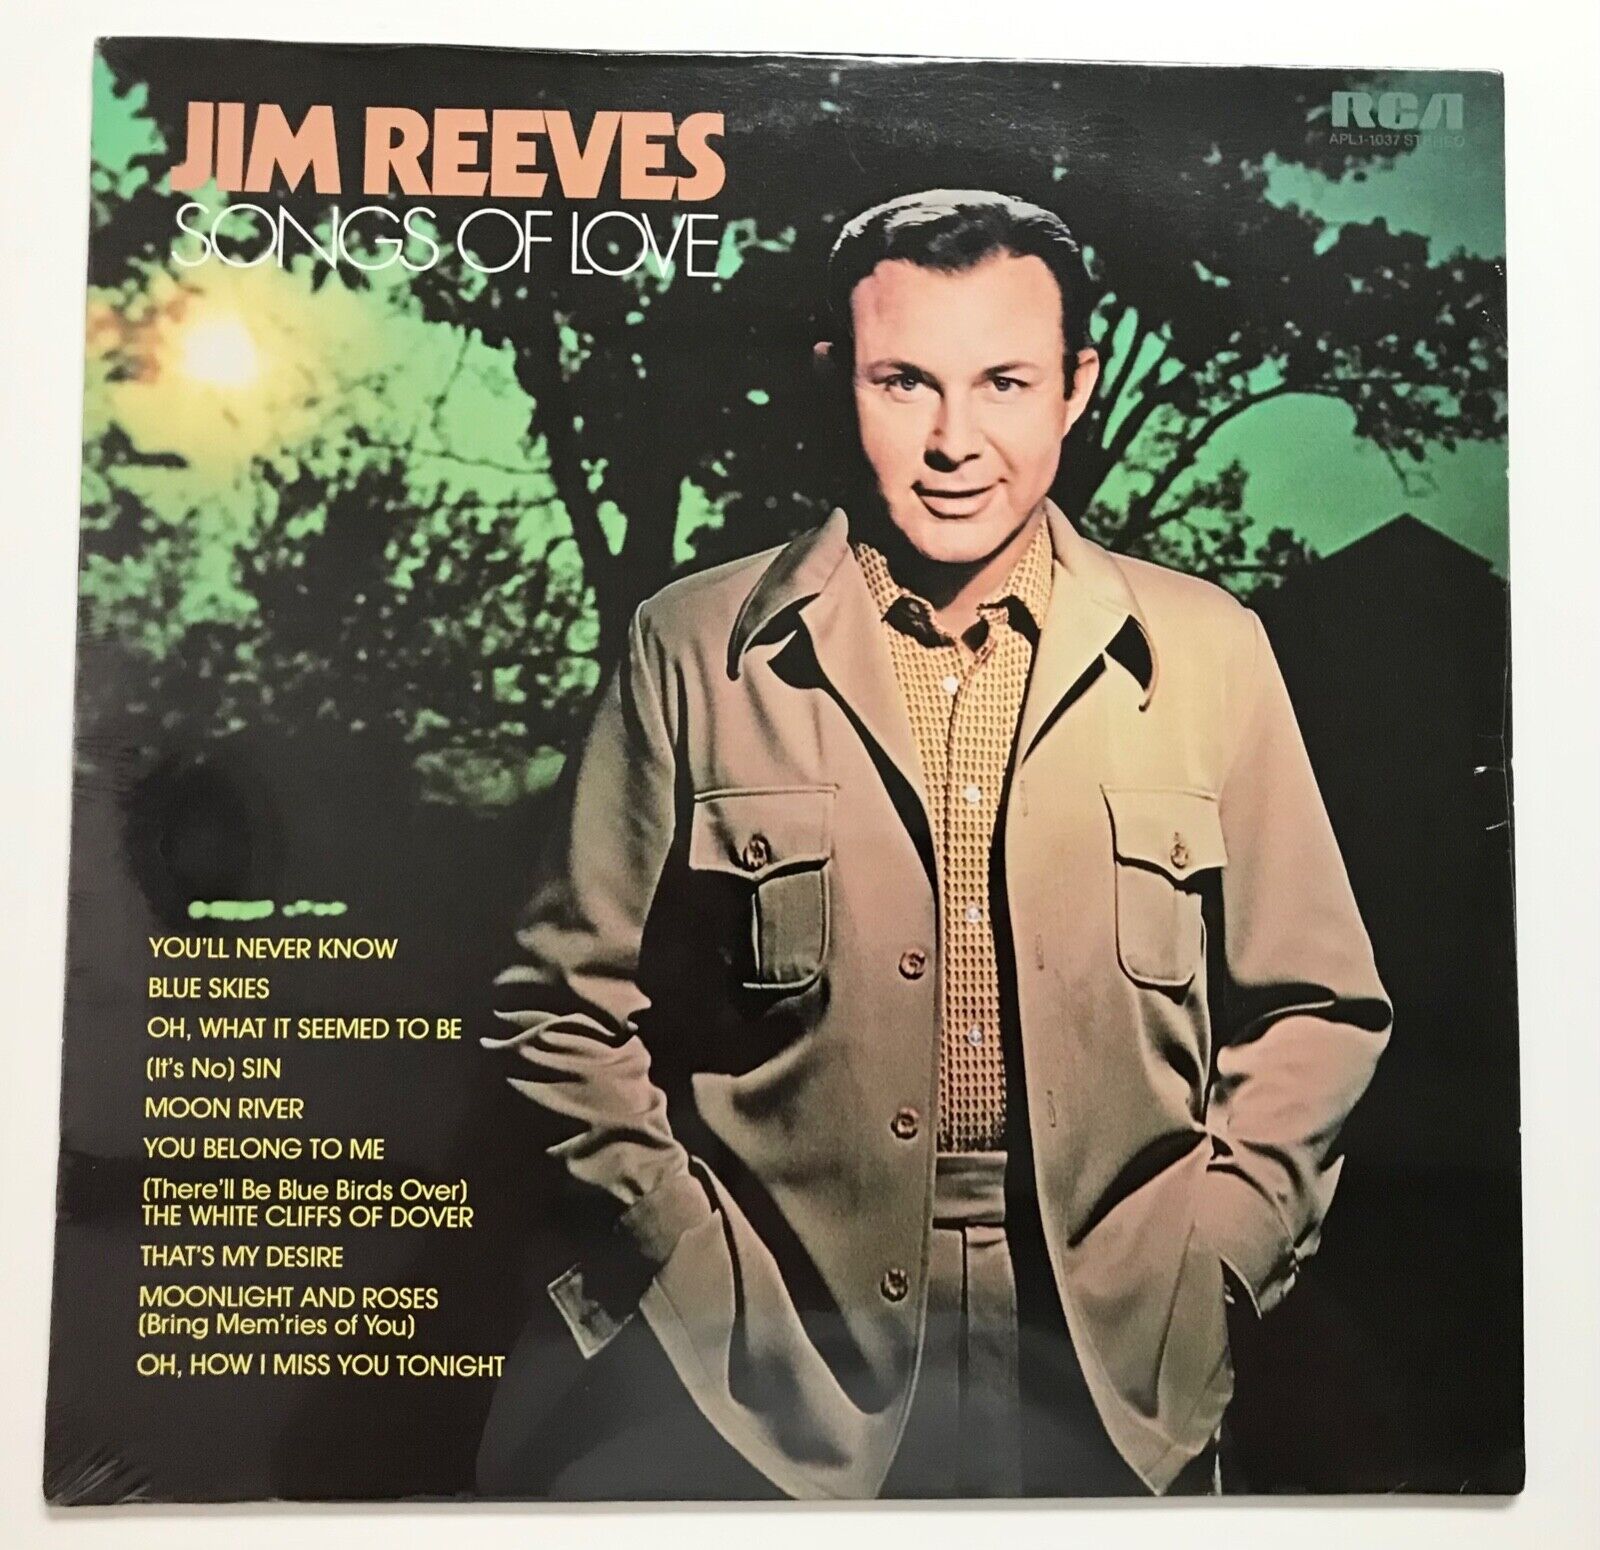 JIM REEVES: Songs of Love (Vinyl LP Record Sealed)